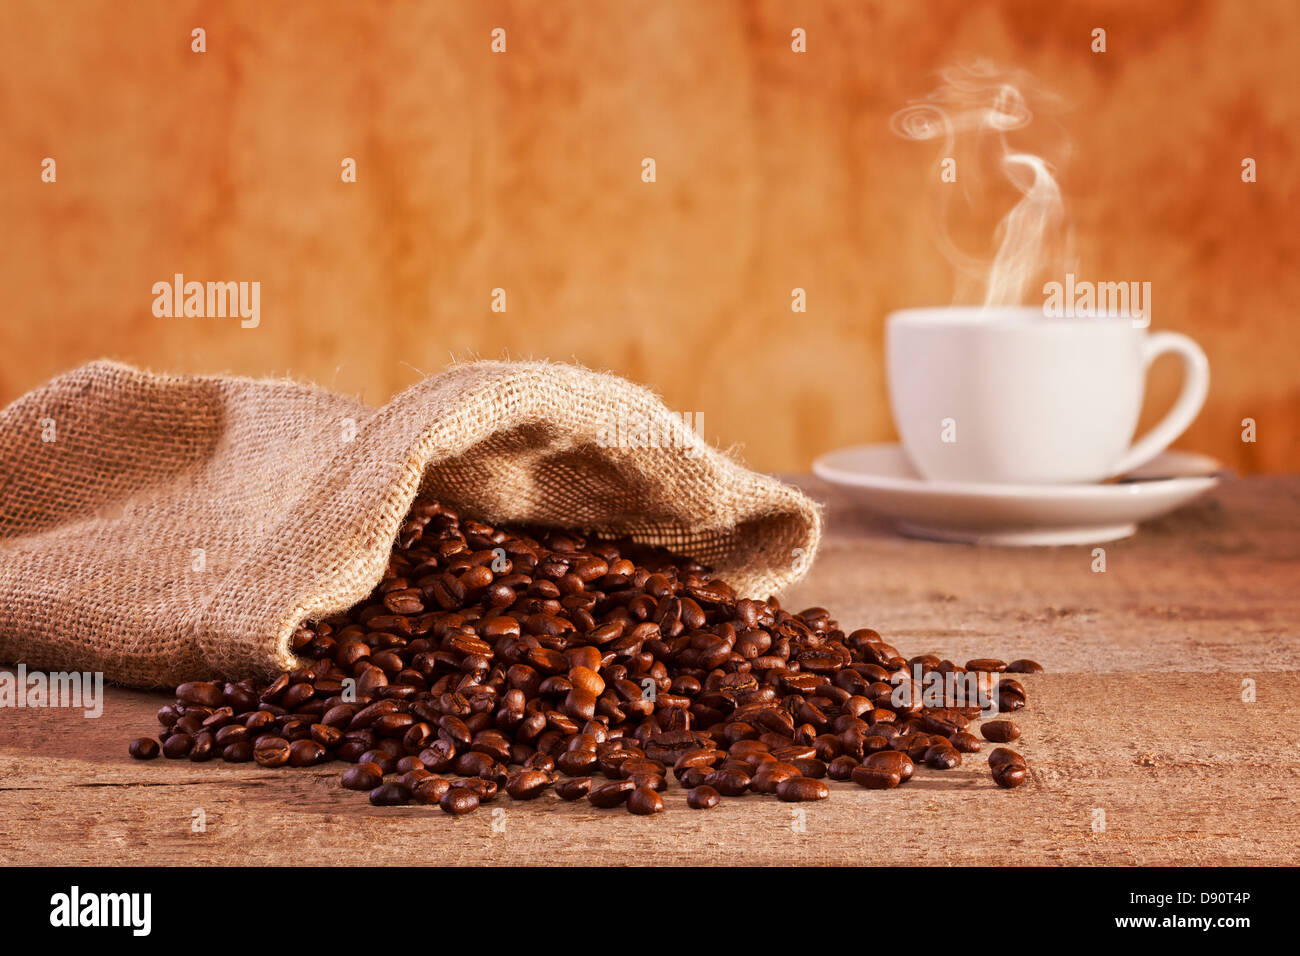 Les grains de café et sac de jute - fèves de café torréfié s'étendre à partir d'un sac de jute, tasse de café avec la vapeur visible... Banque D'Images